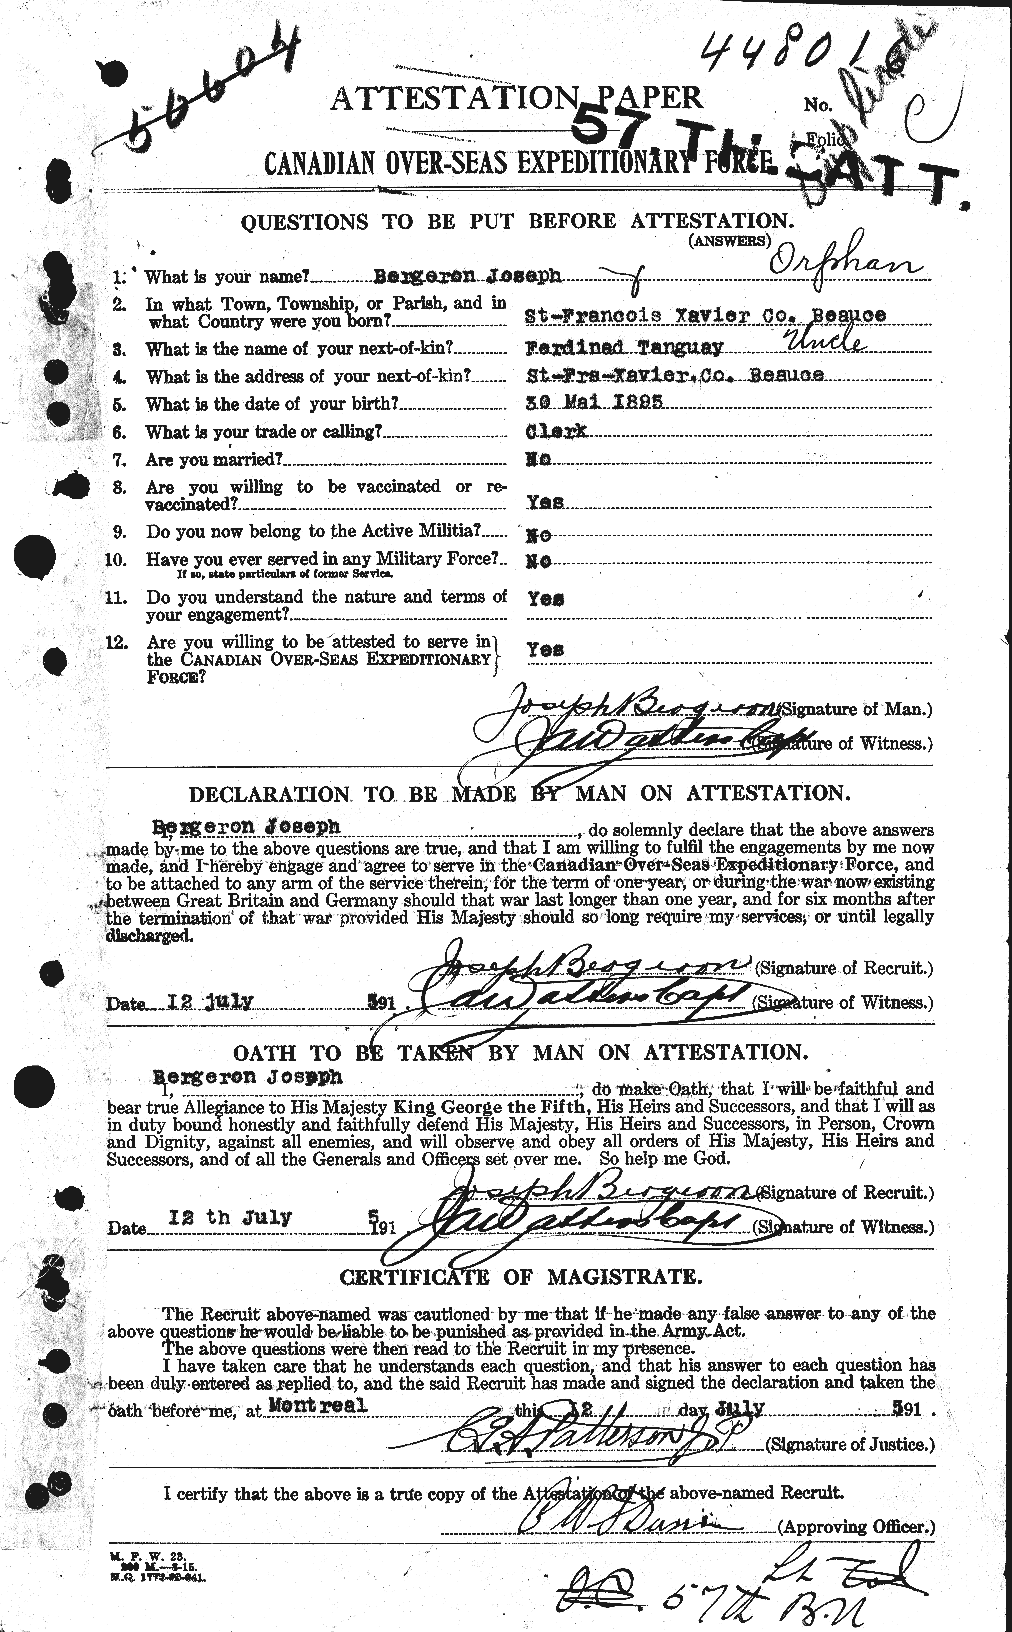 Dossiers du Personnel de la Première Guerre mondiale - CEC 232985a